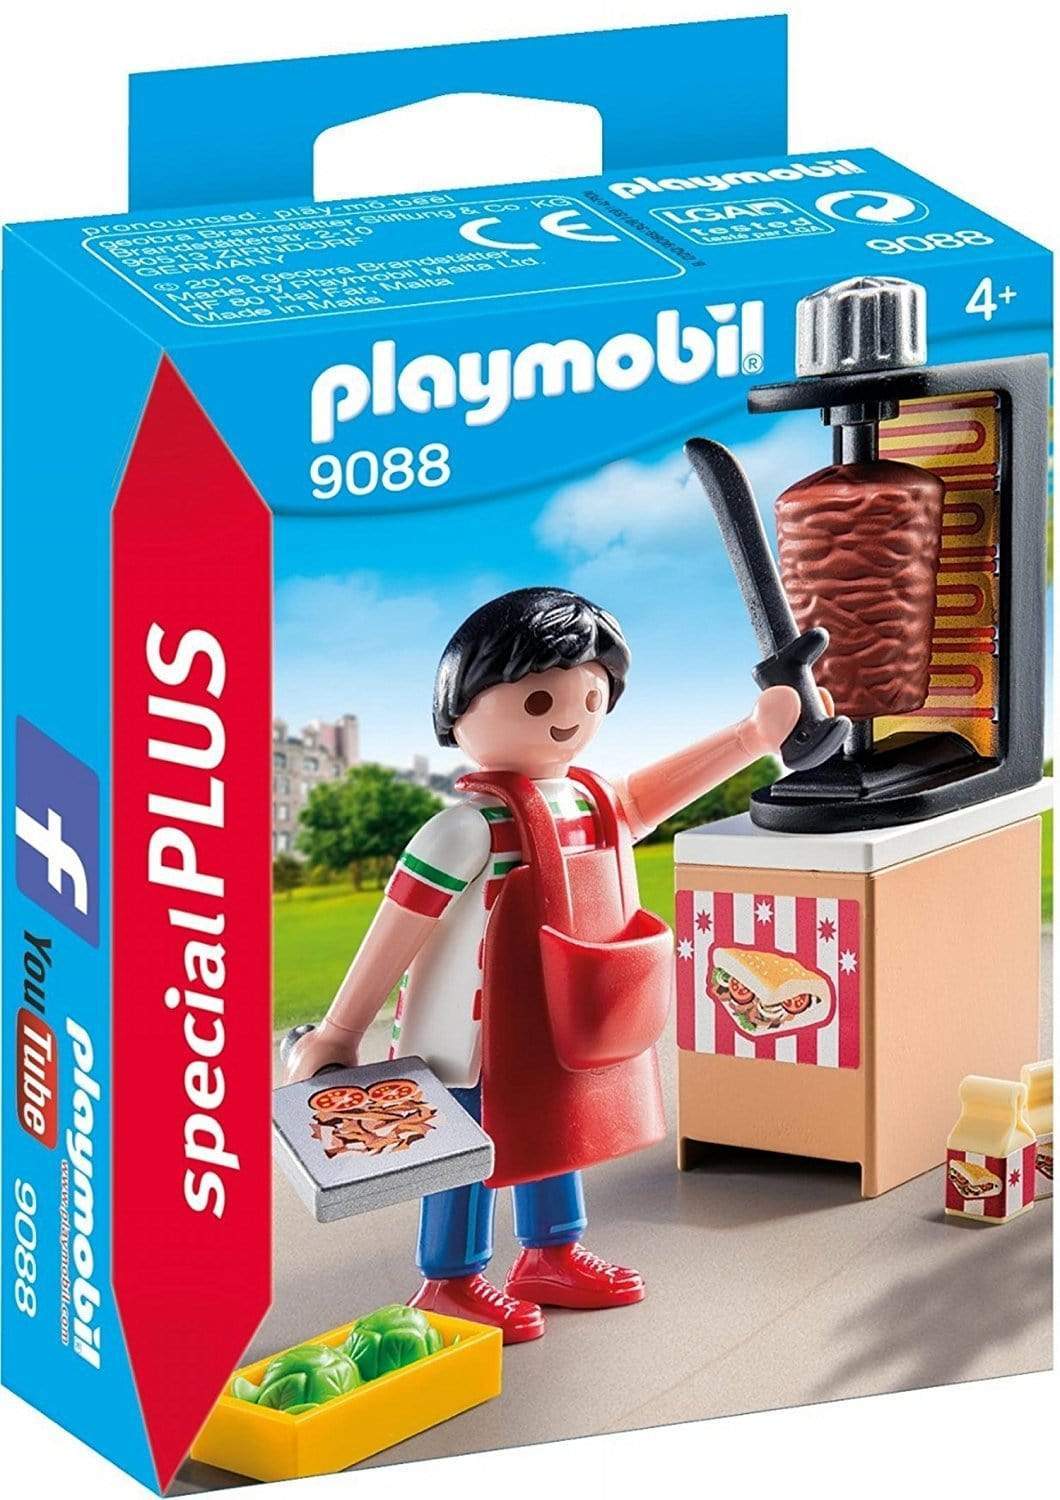 פליימוביל 9088 חנות שווארמה-zrizi toys